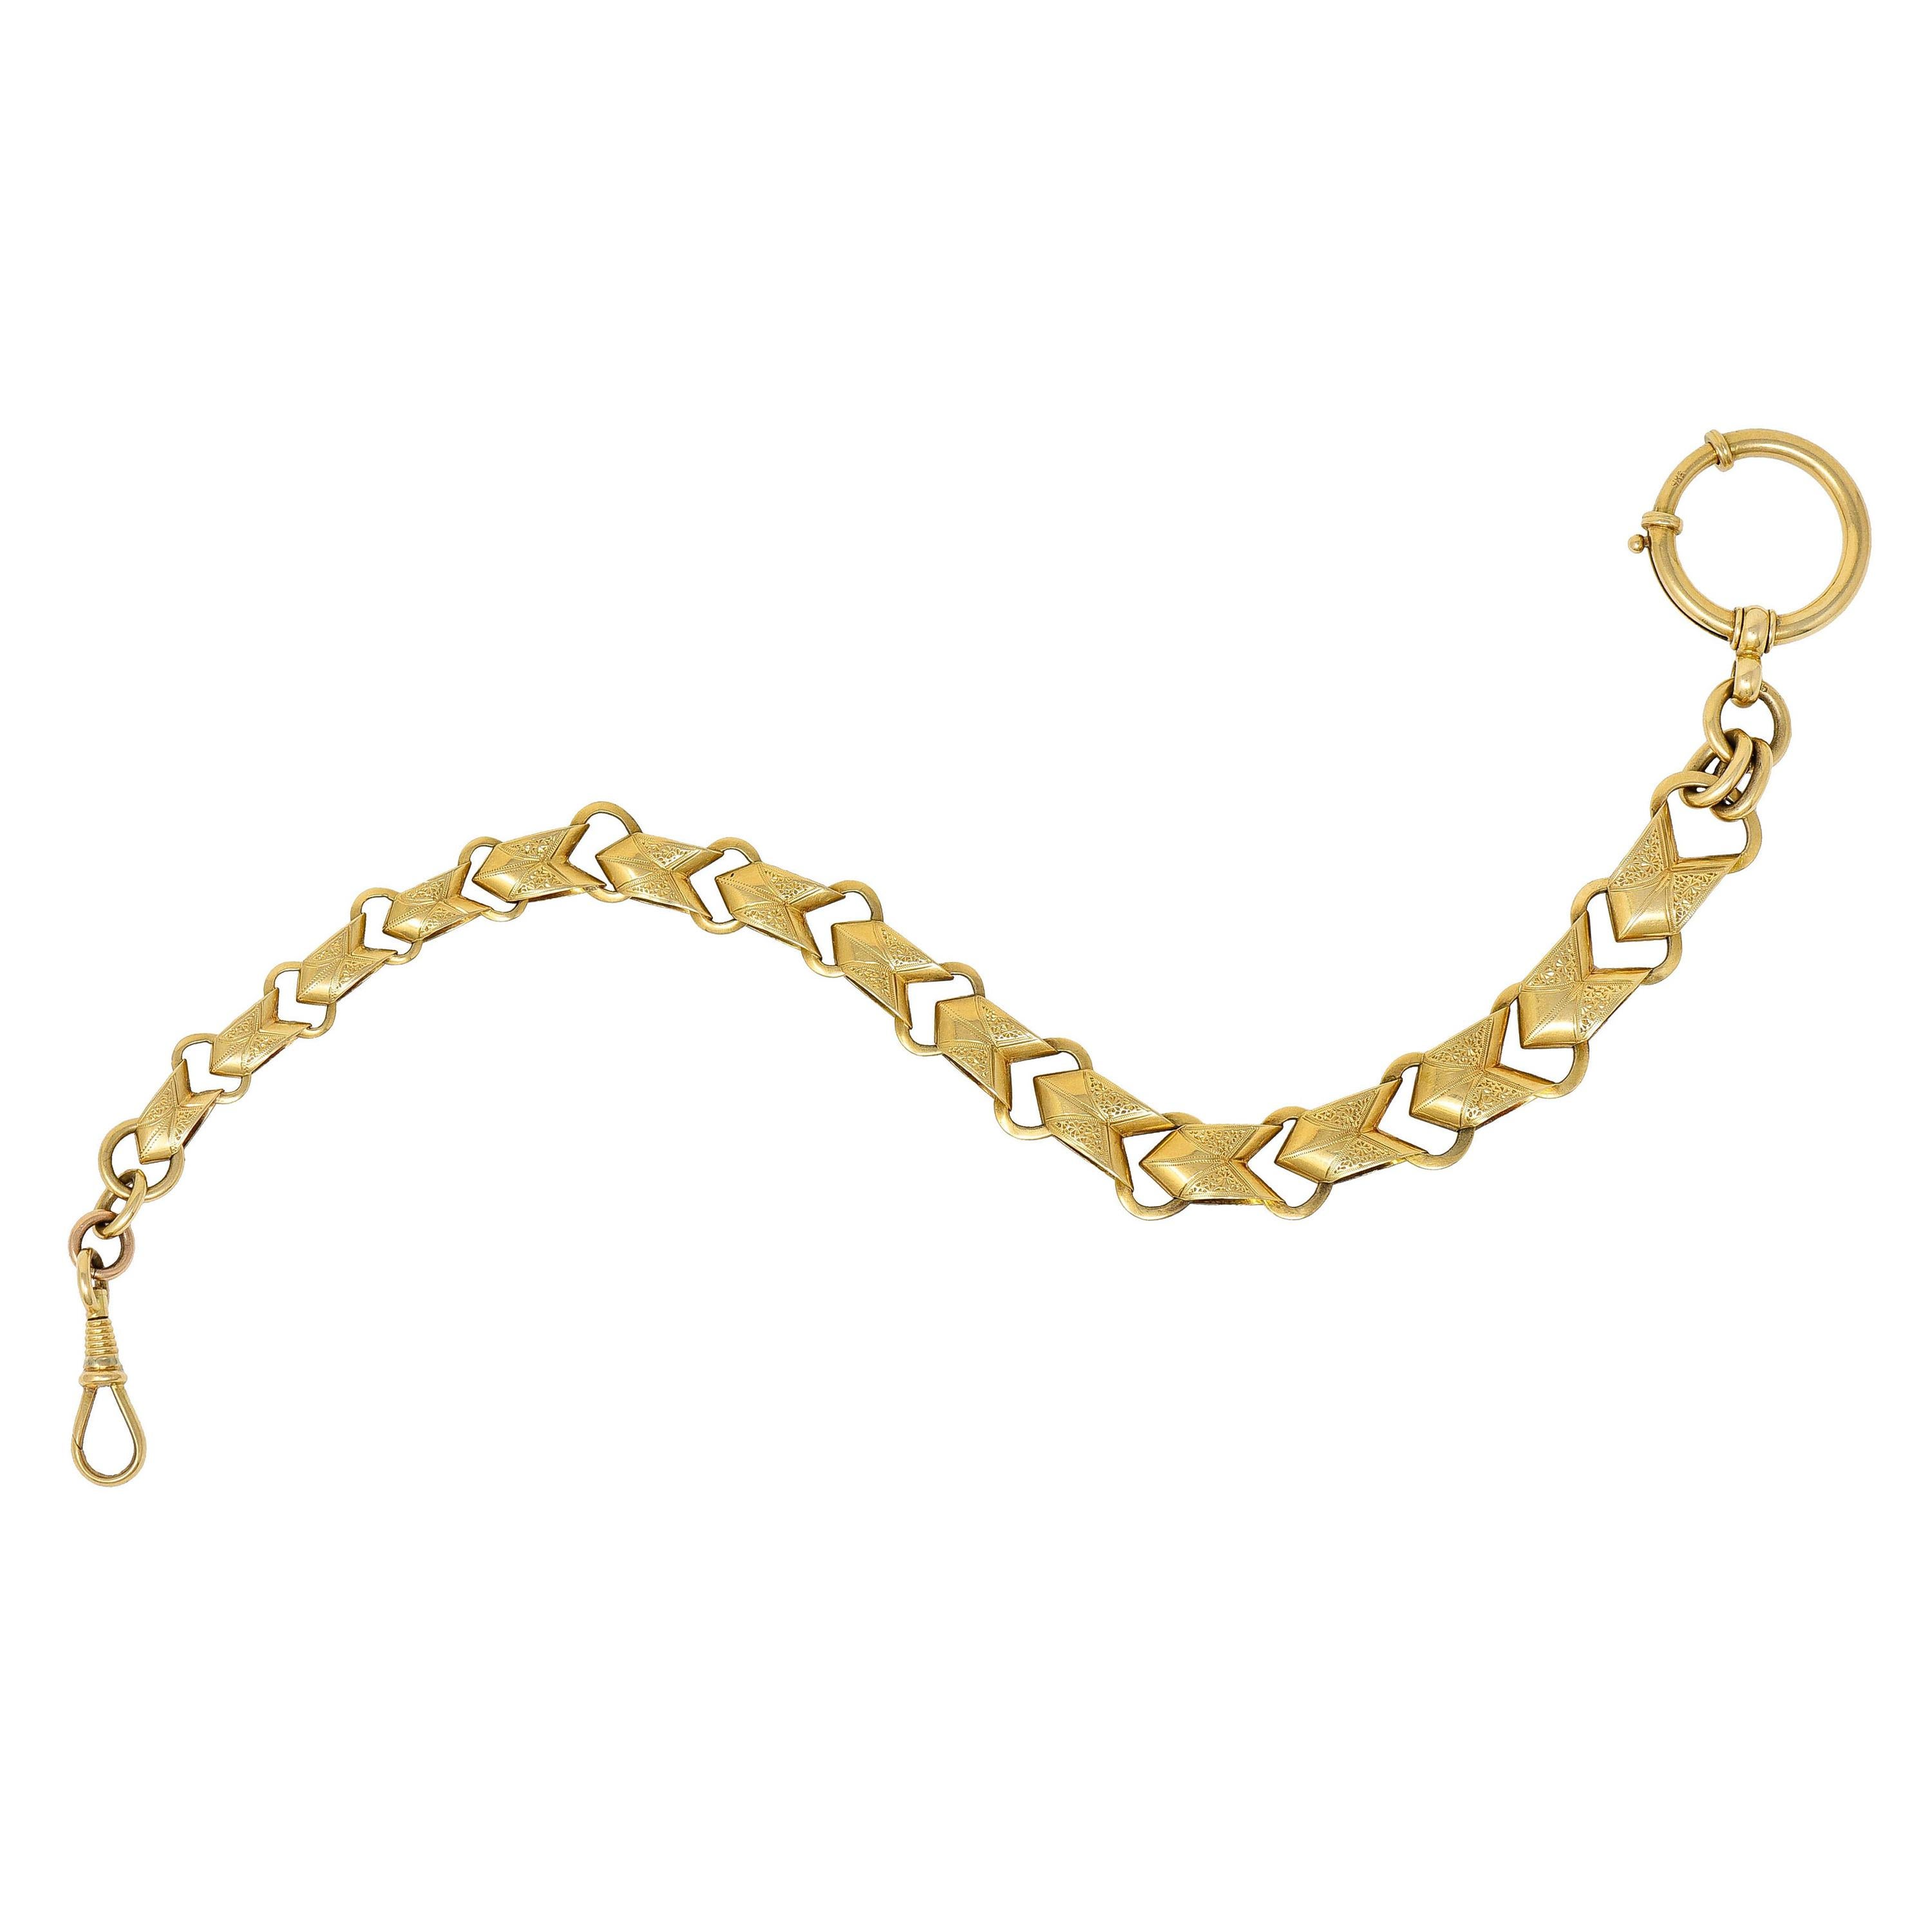 1900 Victorian 14 Karat Gold Linked Watch Chain Bracelet